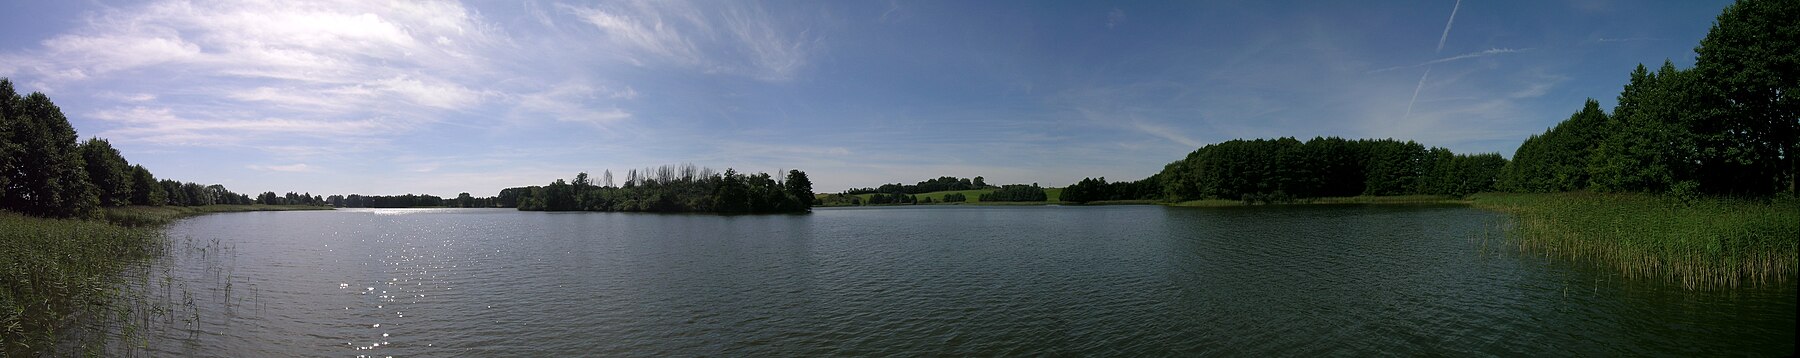 Ostrowite gölü panorama.jpg